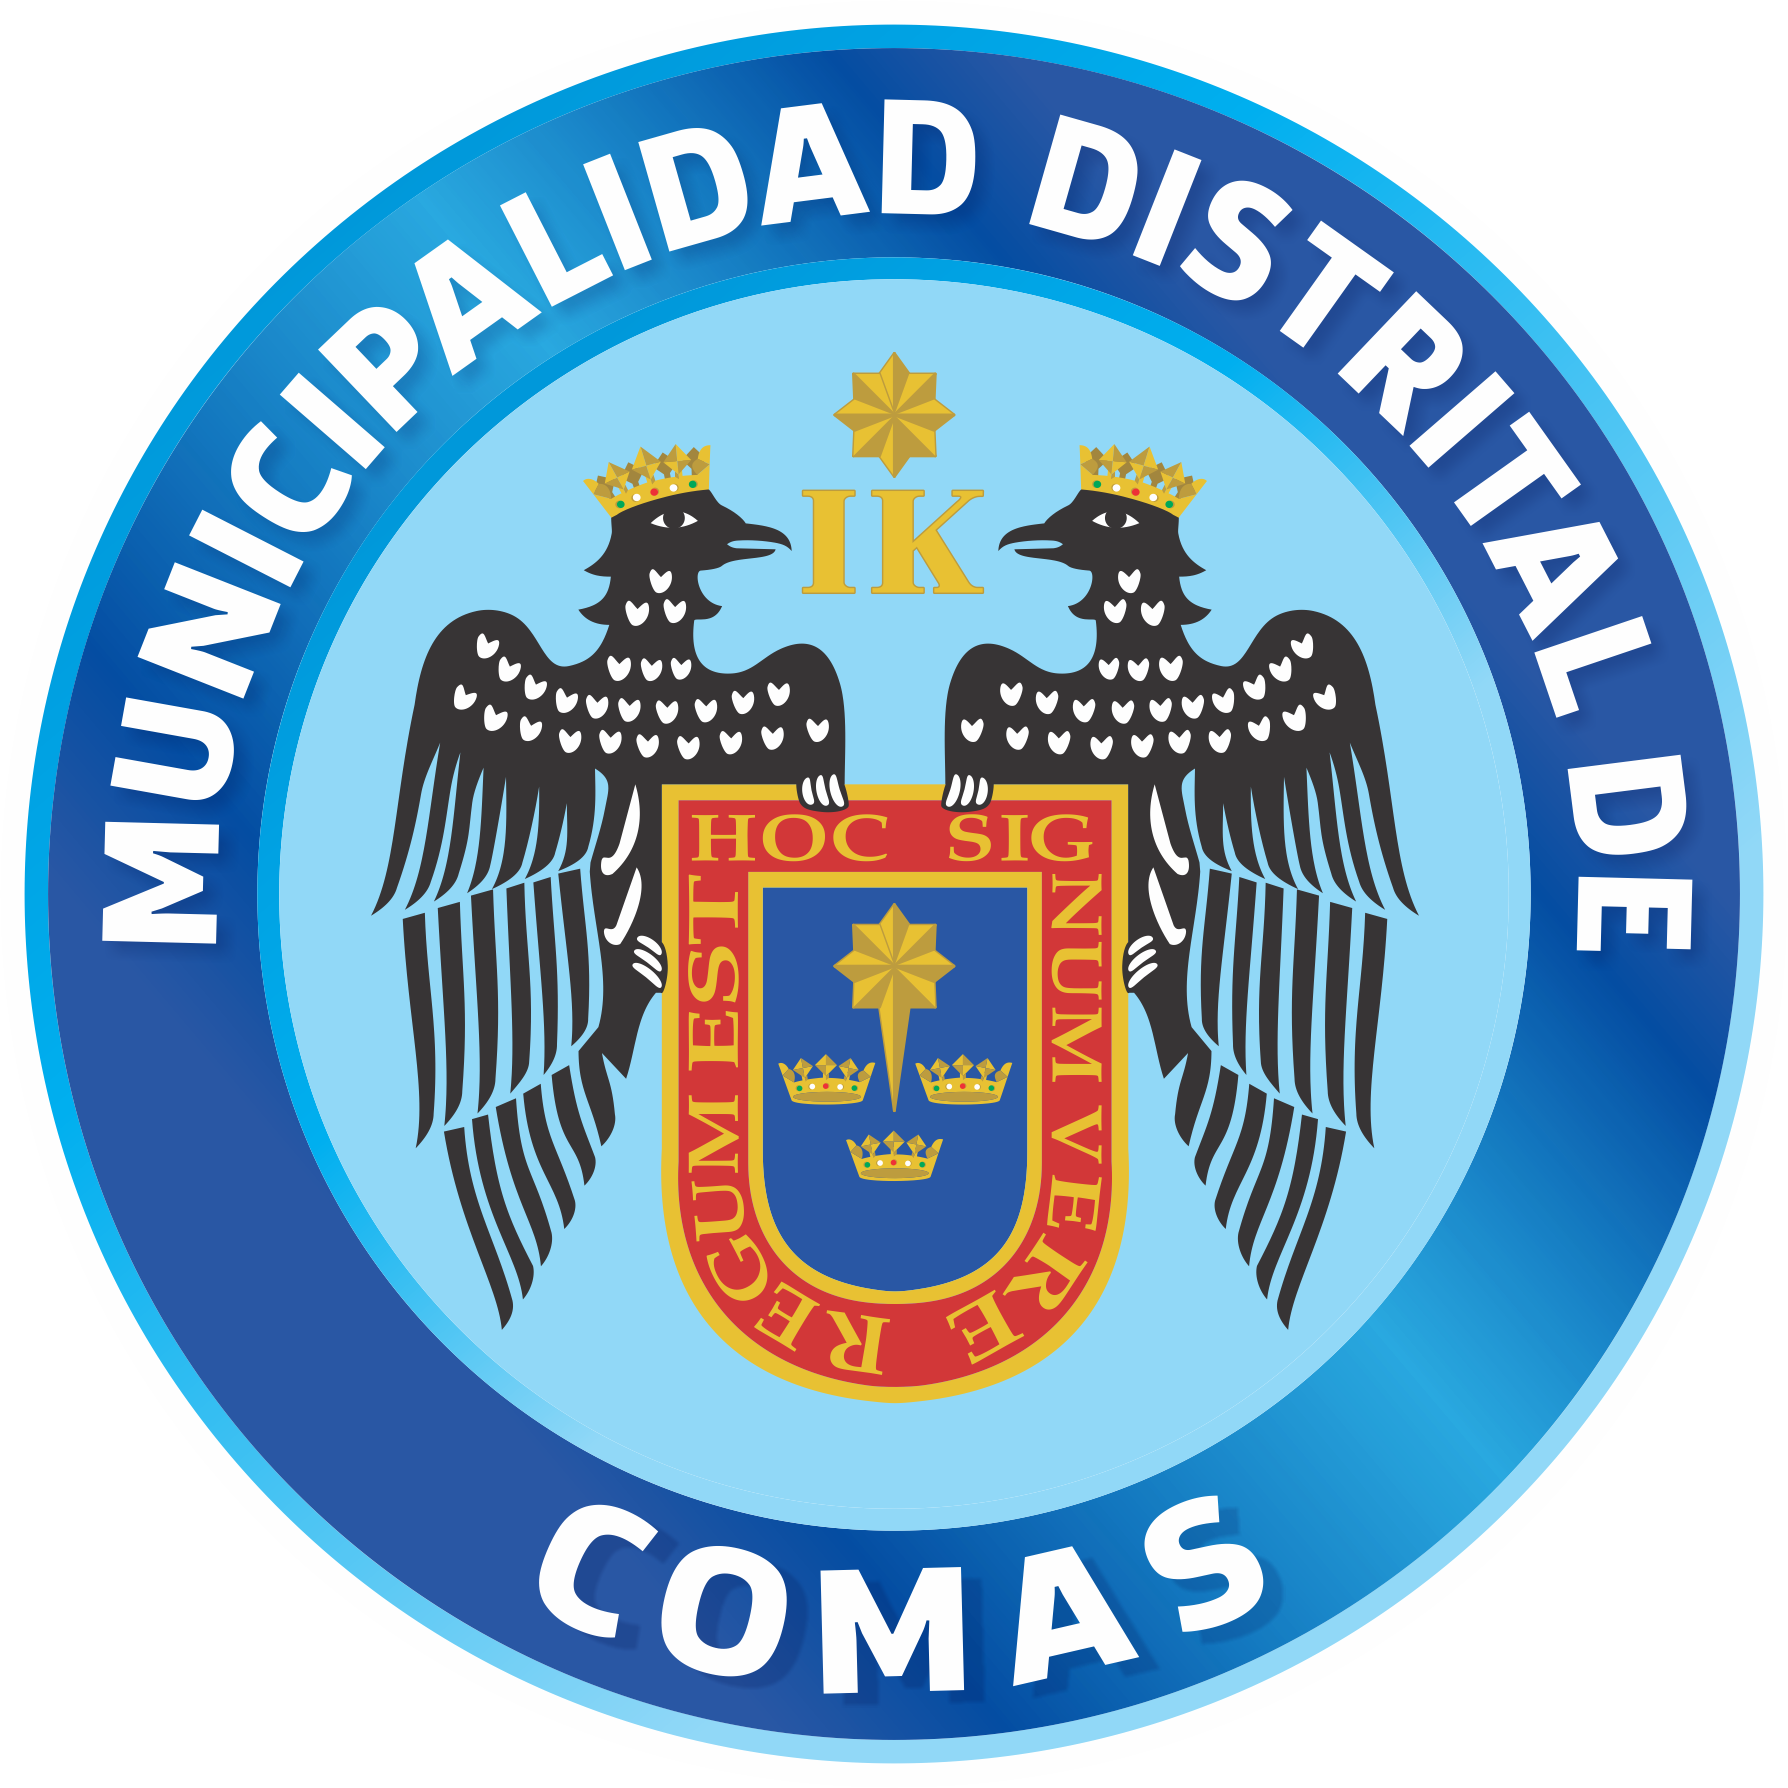 Comas District Logo